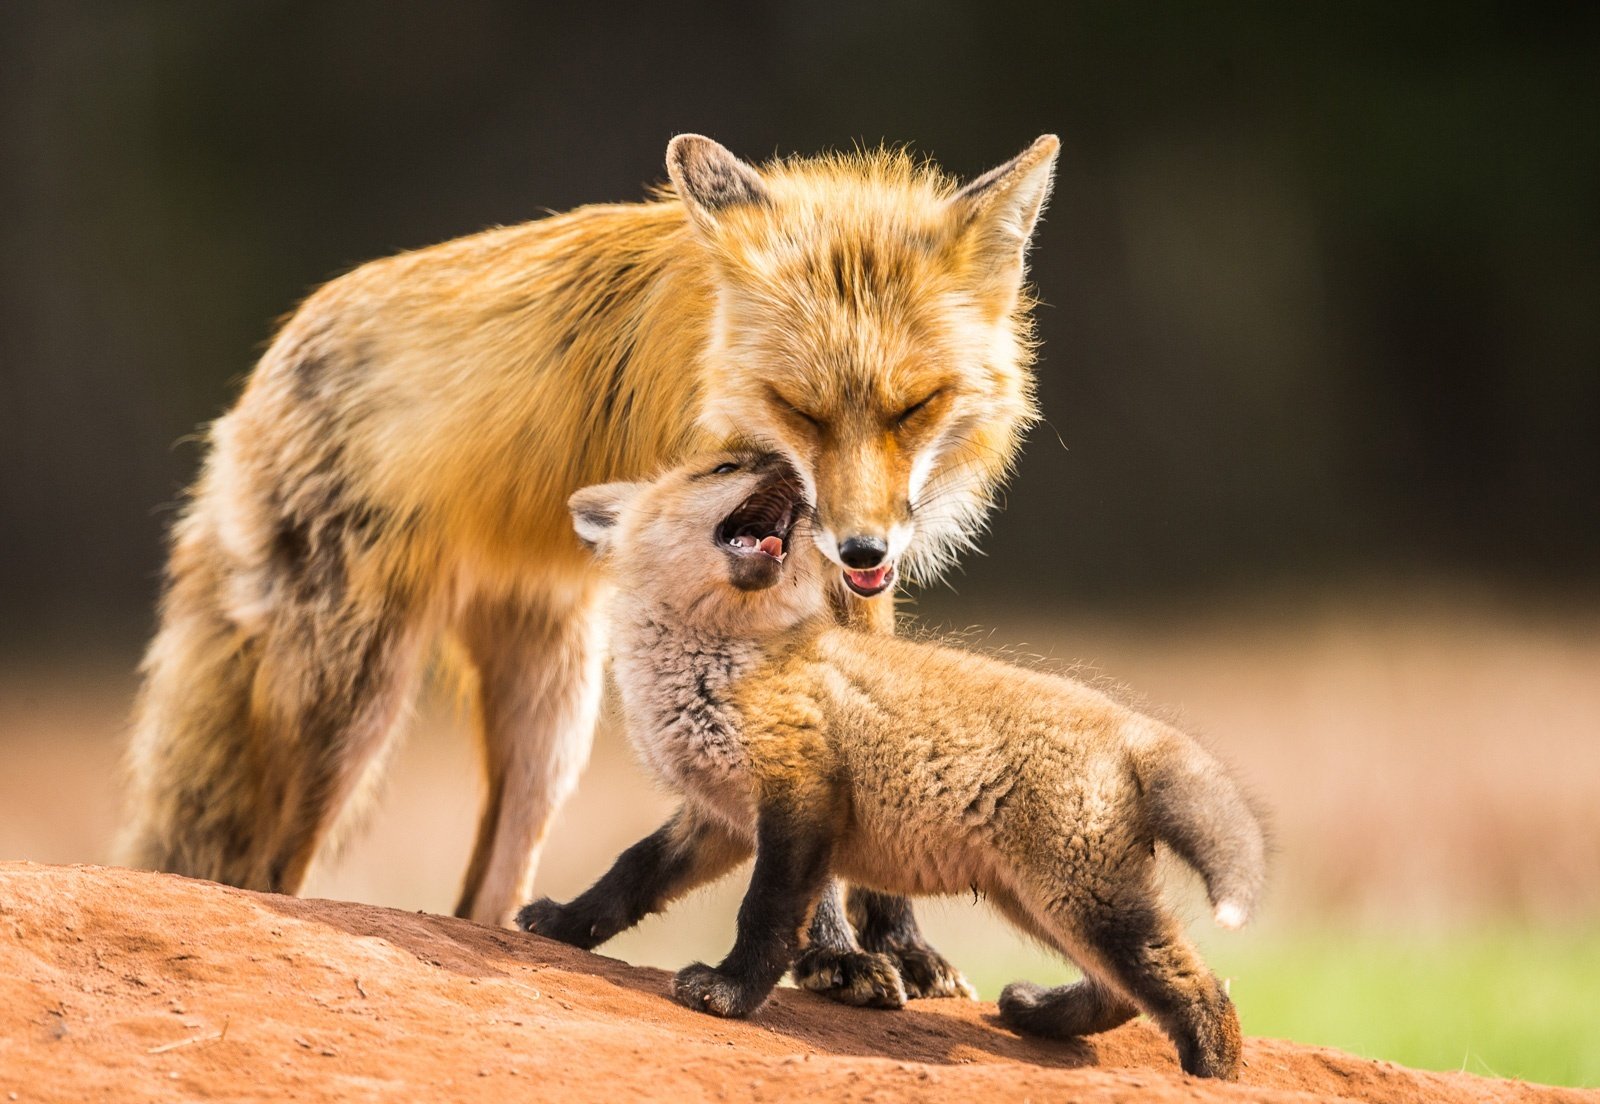 Fox mom